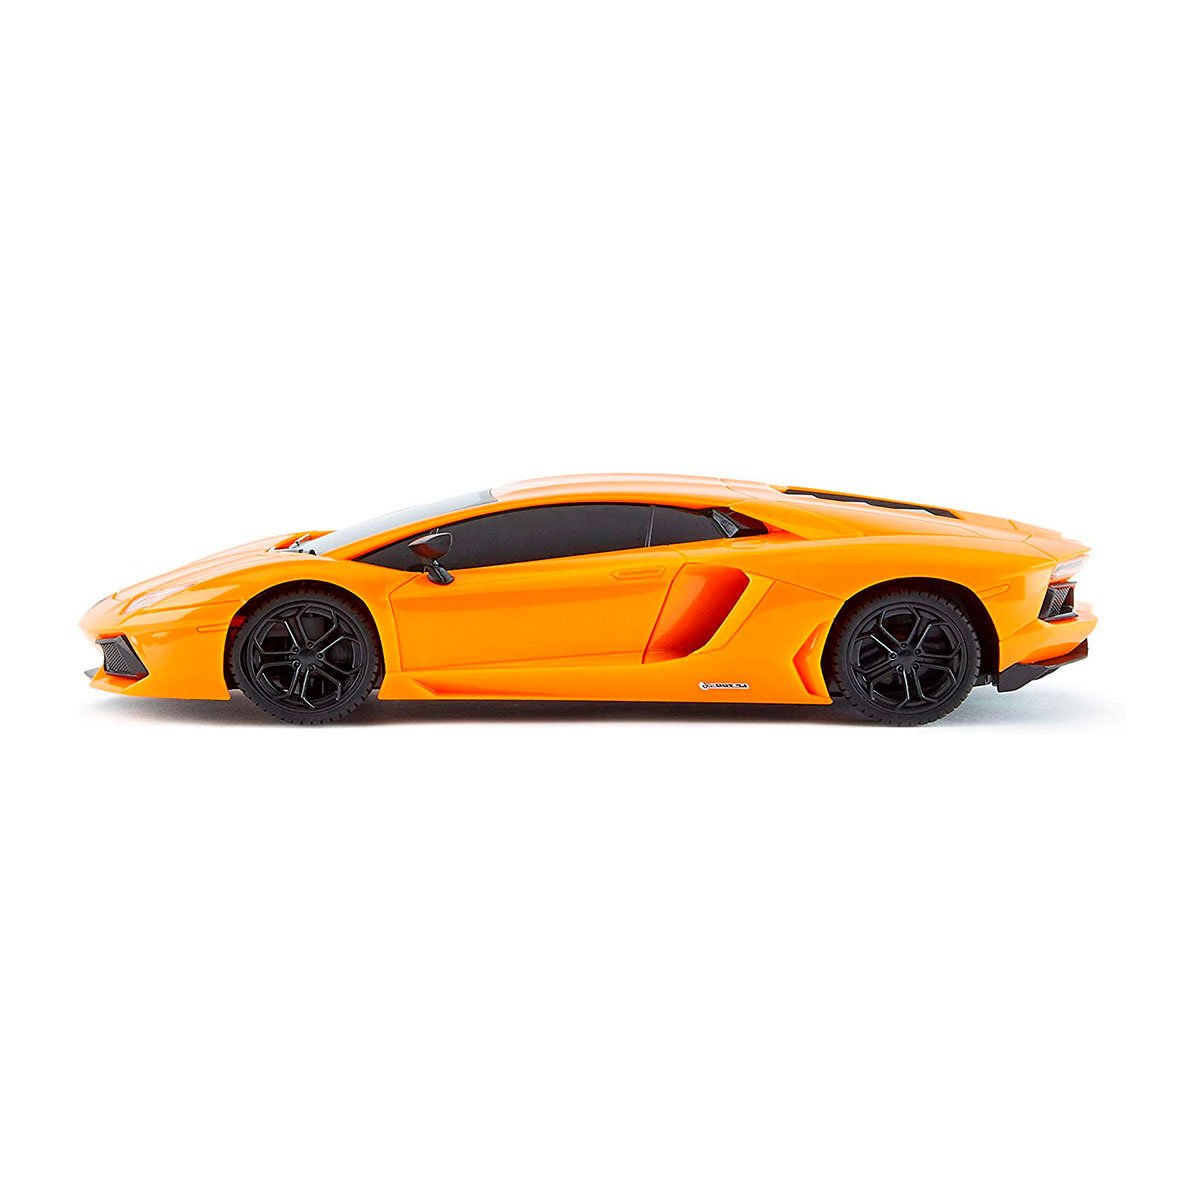 Автомобиль KS Drive на р/у Lamborghini Aventador LP 700-4, 1:24, 2.4Ghz оранжевый (124GLBO) - фото 4